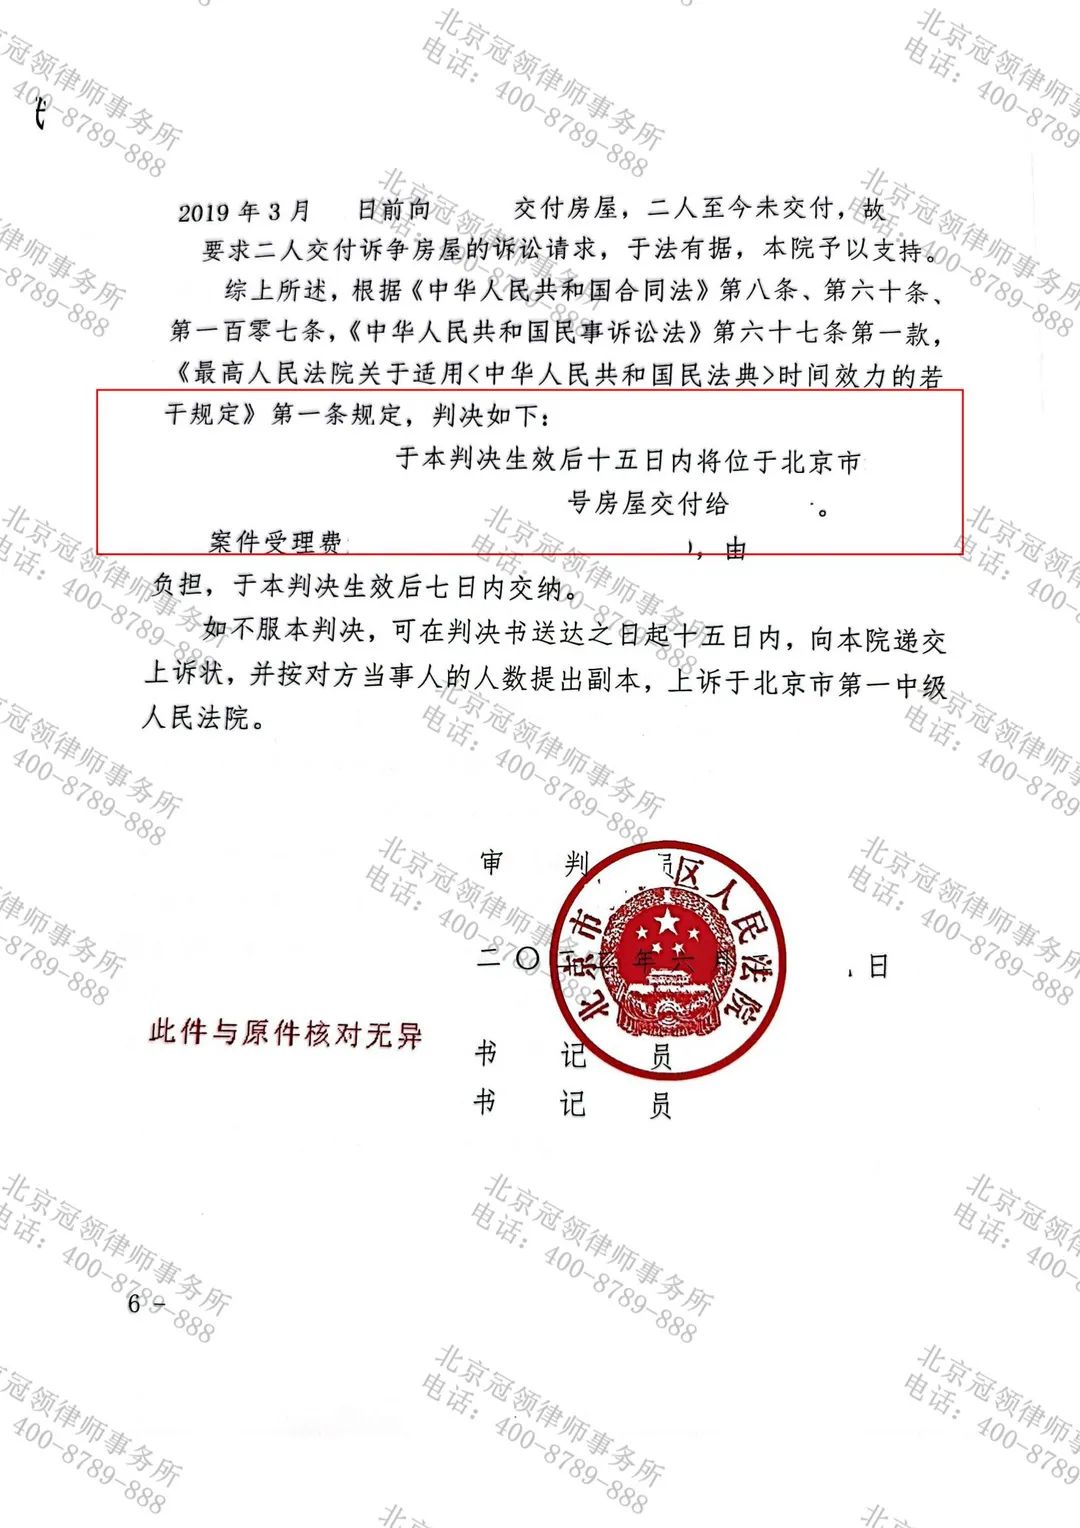 冠领律师代理的北京房屋买卖合同纠纷案胜诉-图2